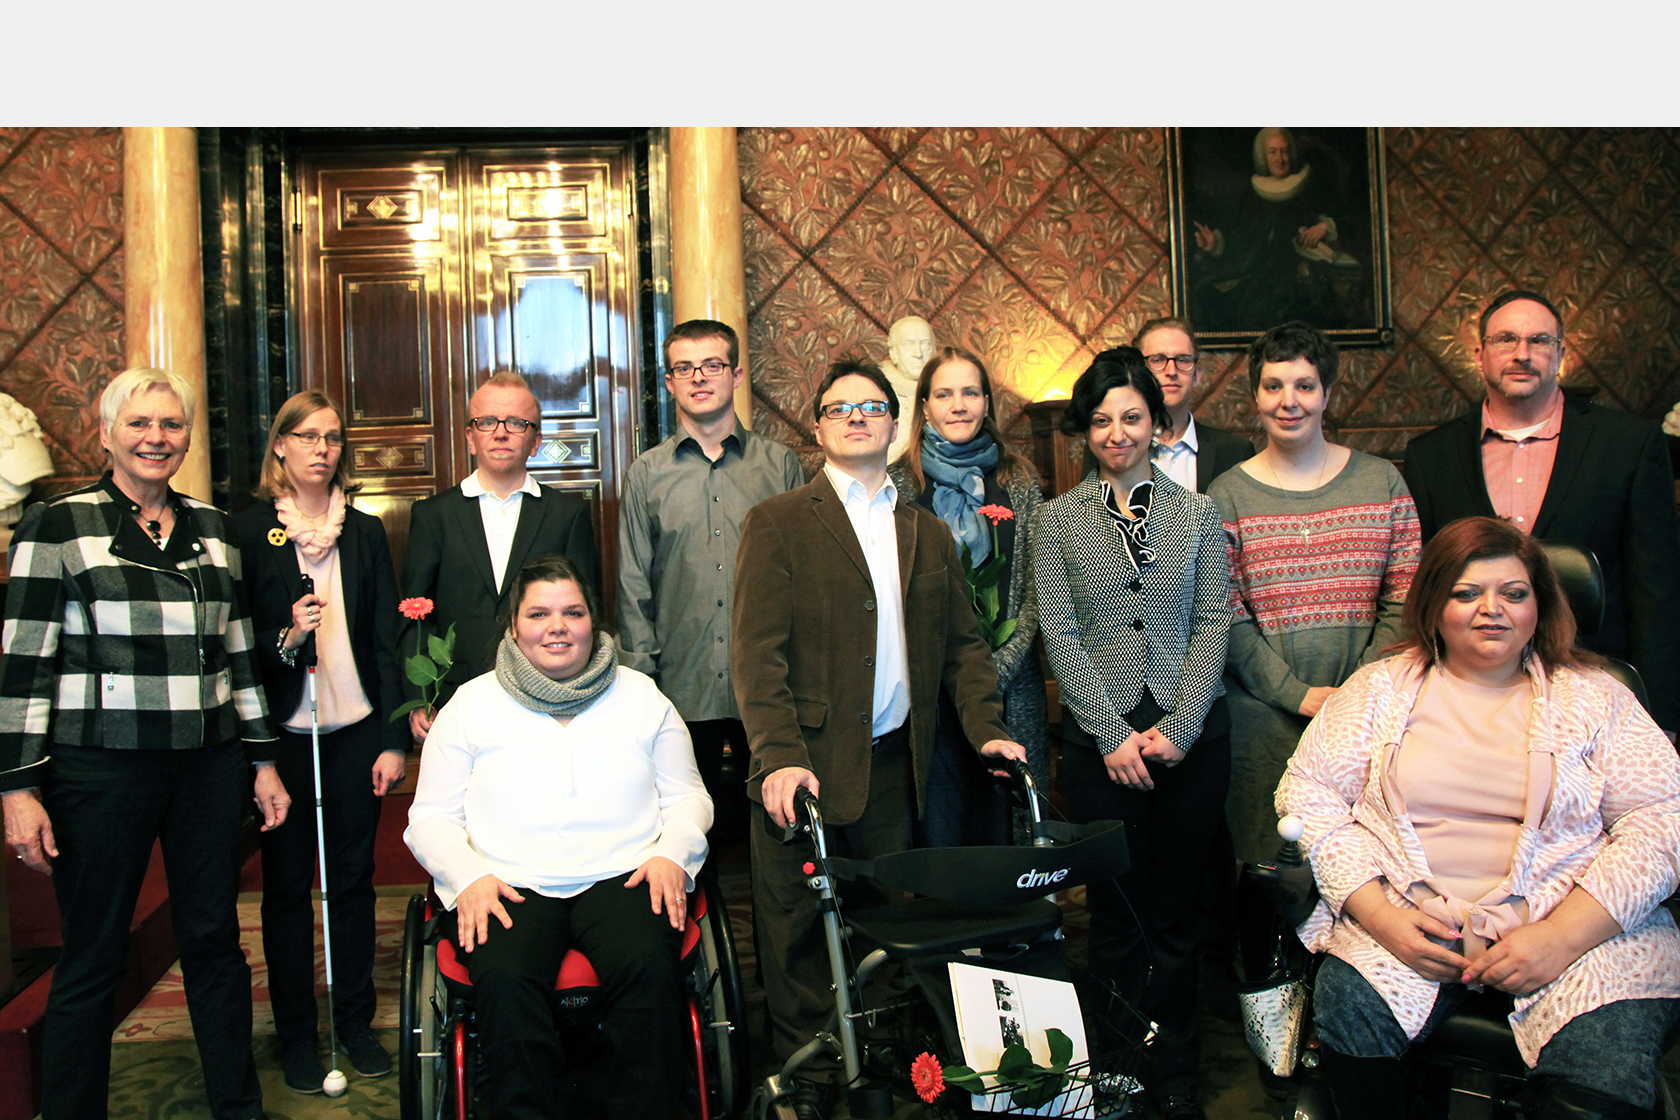 11 Auszubildende von GUT GEFRAGT bei der Übergabe ihrer Zertifikate im Hamburger Rathaus. Die Gruppe steht in einem prächtigen Saal mit Wandvertäfelung. Dazu gehören unter anderem zwei Rollstuhlfahrerinnen, ein Auszubildender mit Rollator und eine blinde Auszubildende.